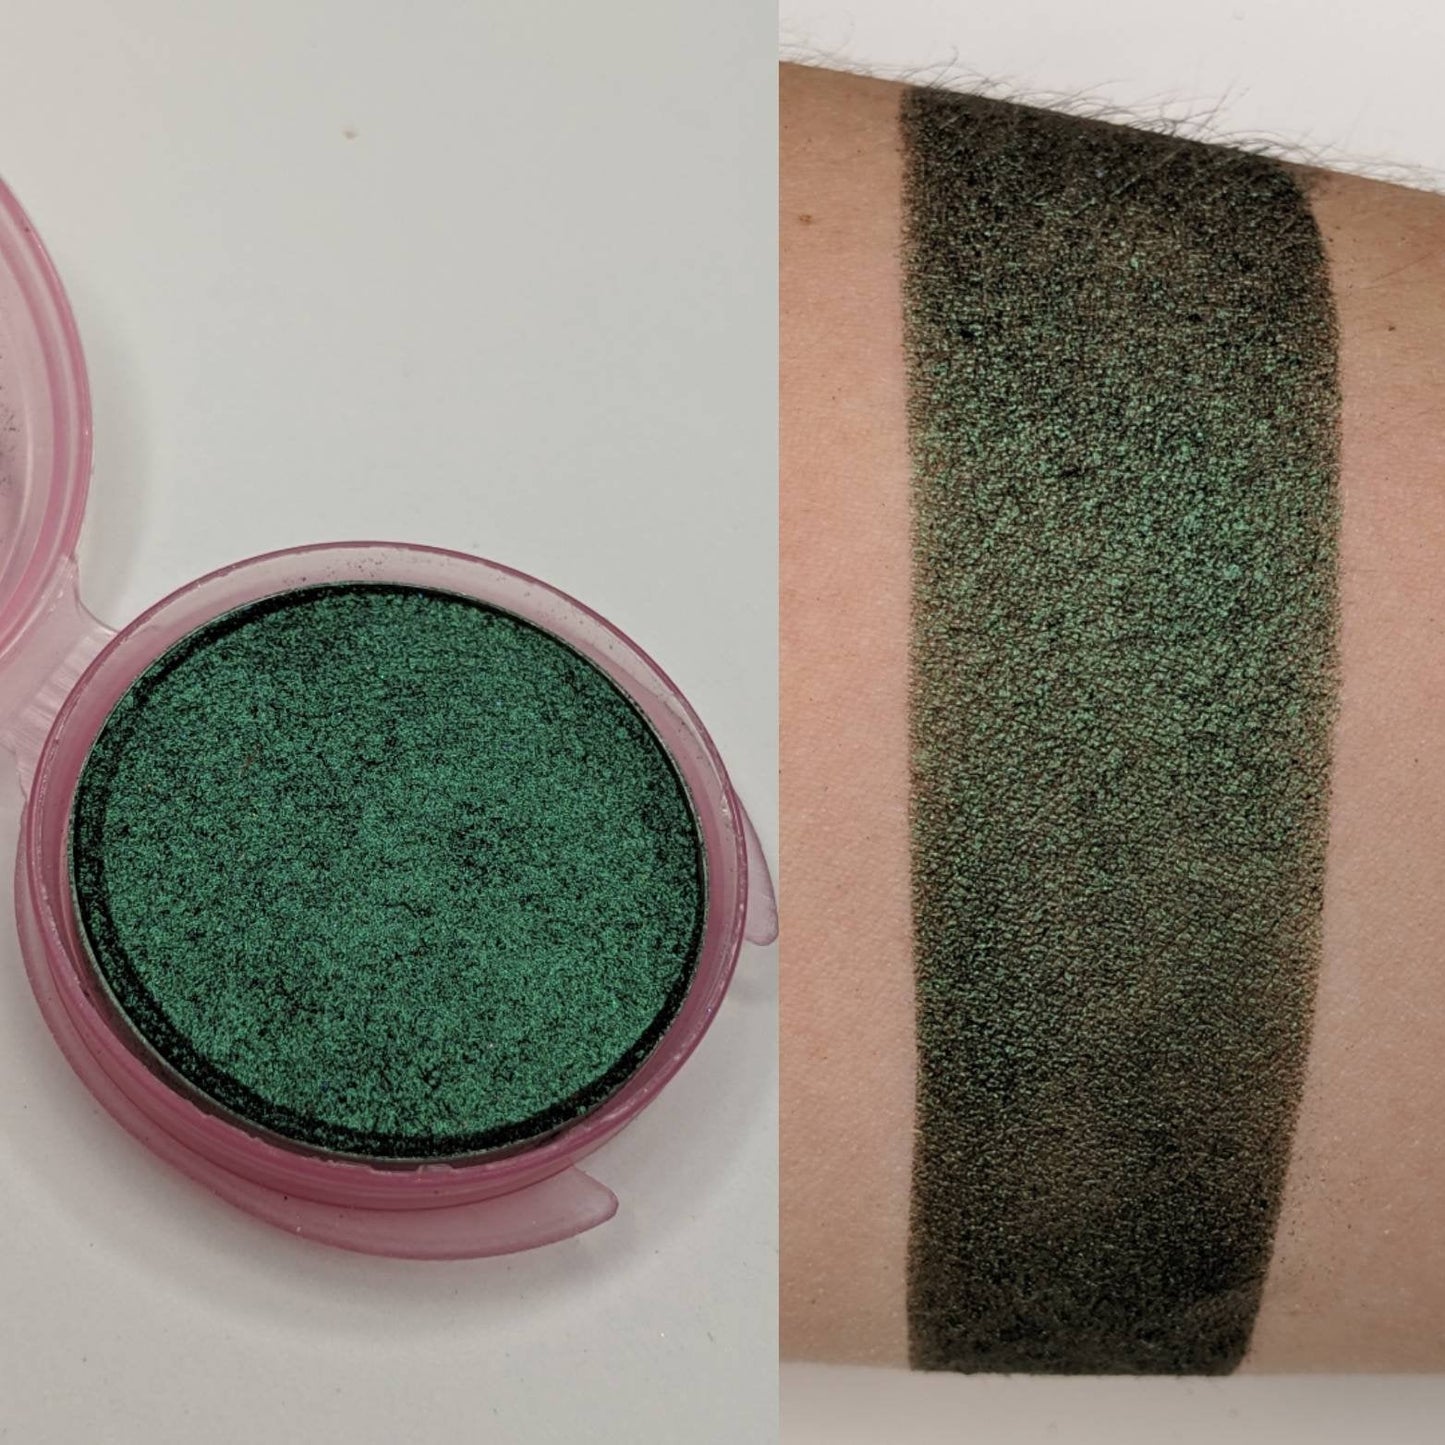 Emerald - Eyeshadow Green